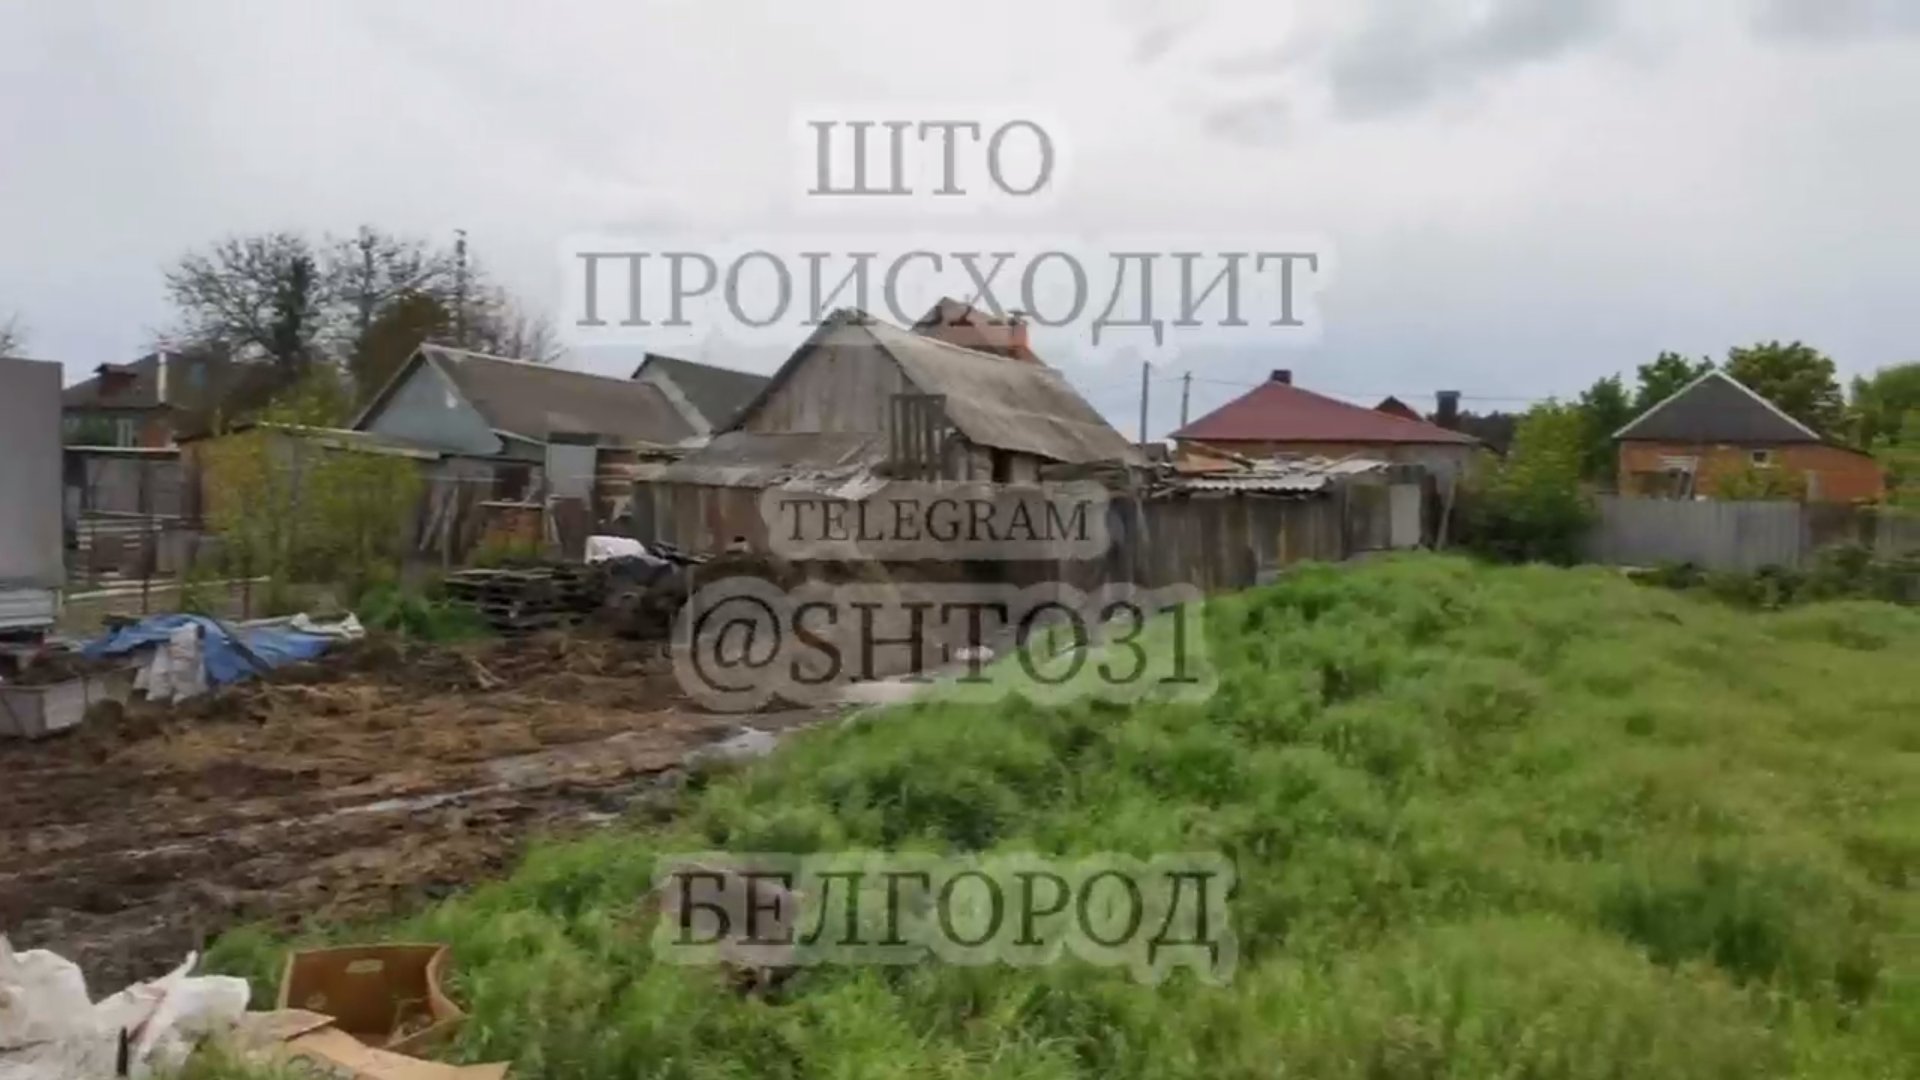 Огород в Шебекино Белгородской области, попавший под обстрел 10 мая 2023 года. Скриншот из видео телеграм-канала «Што происходит Белгород».